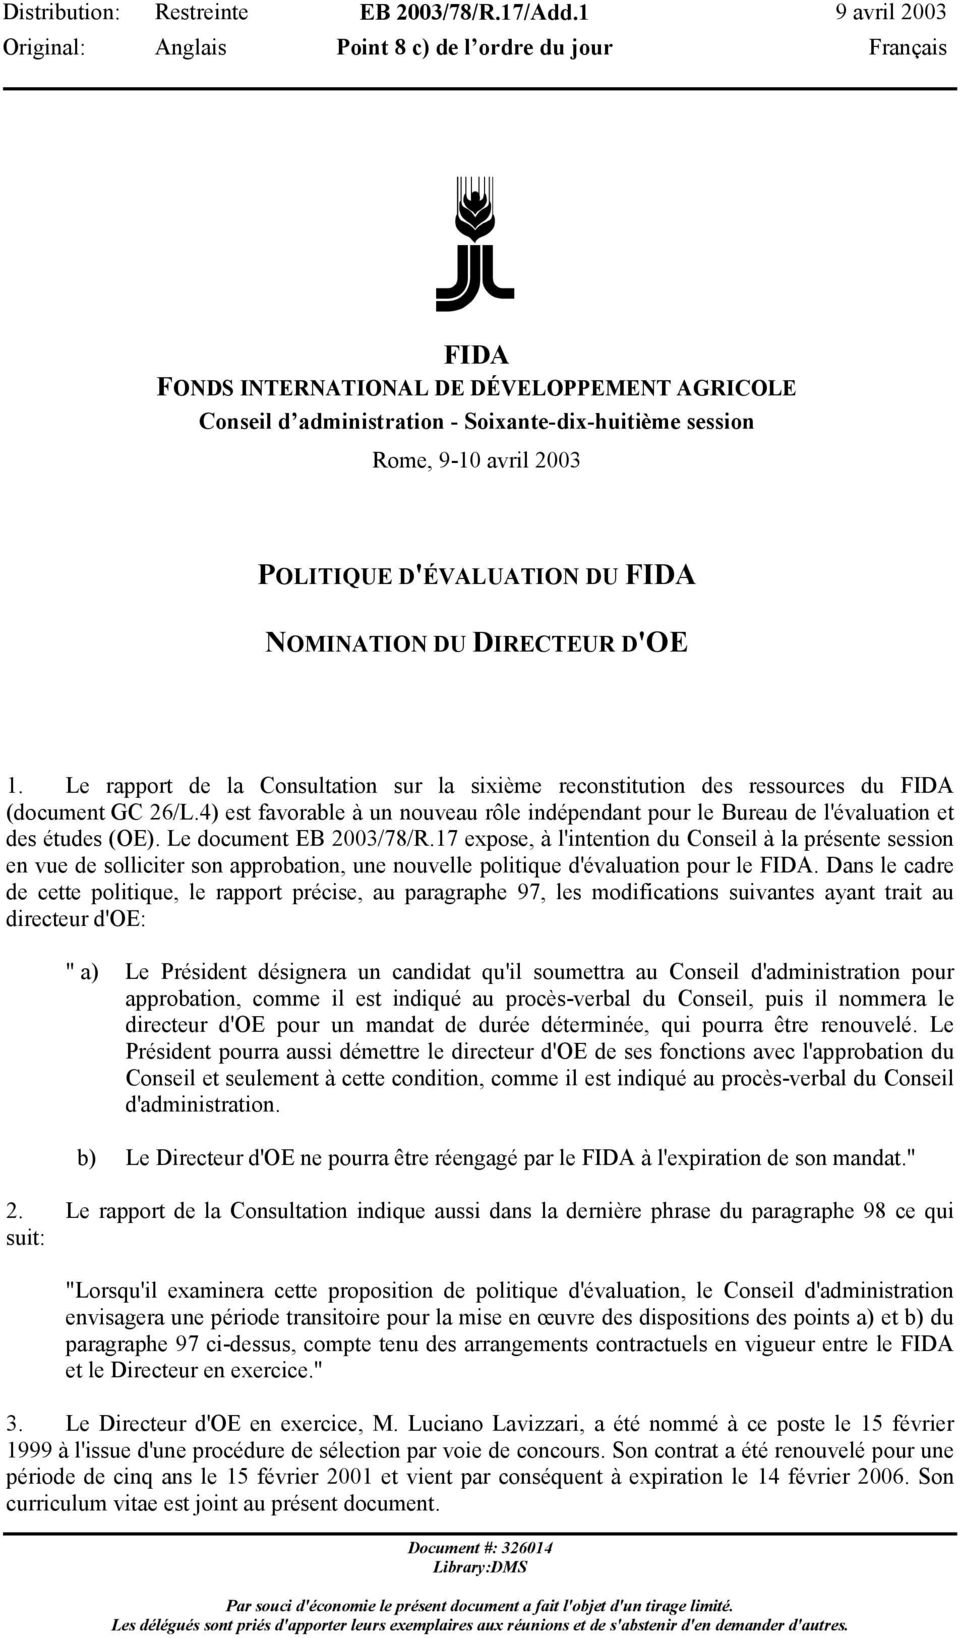 DU DIRECTEUR D'OE 1. Le rapport de la Consultation sur la sixième reconstitution des ressources du FIDA (document GC 26/L.